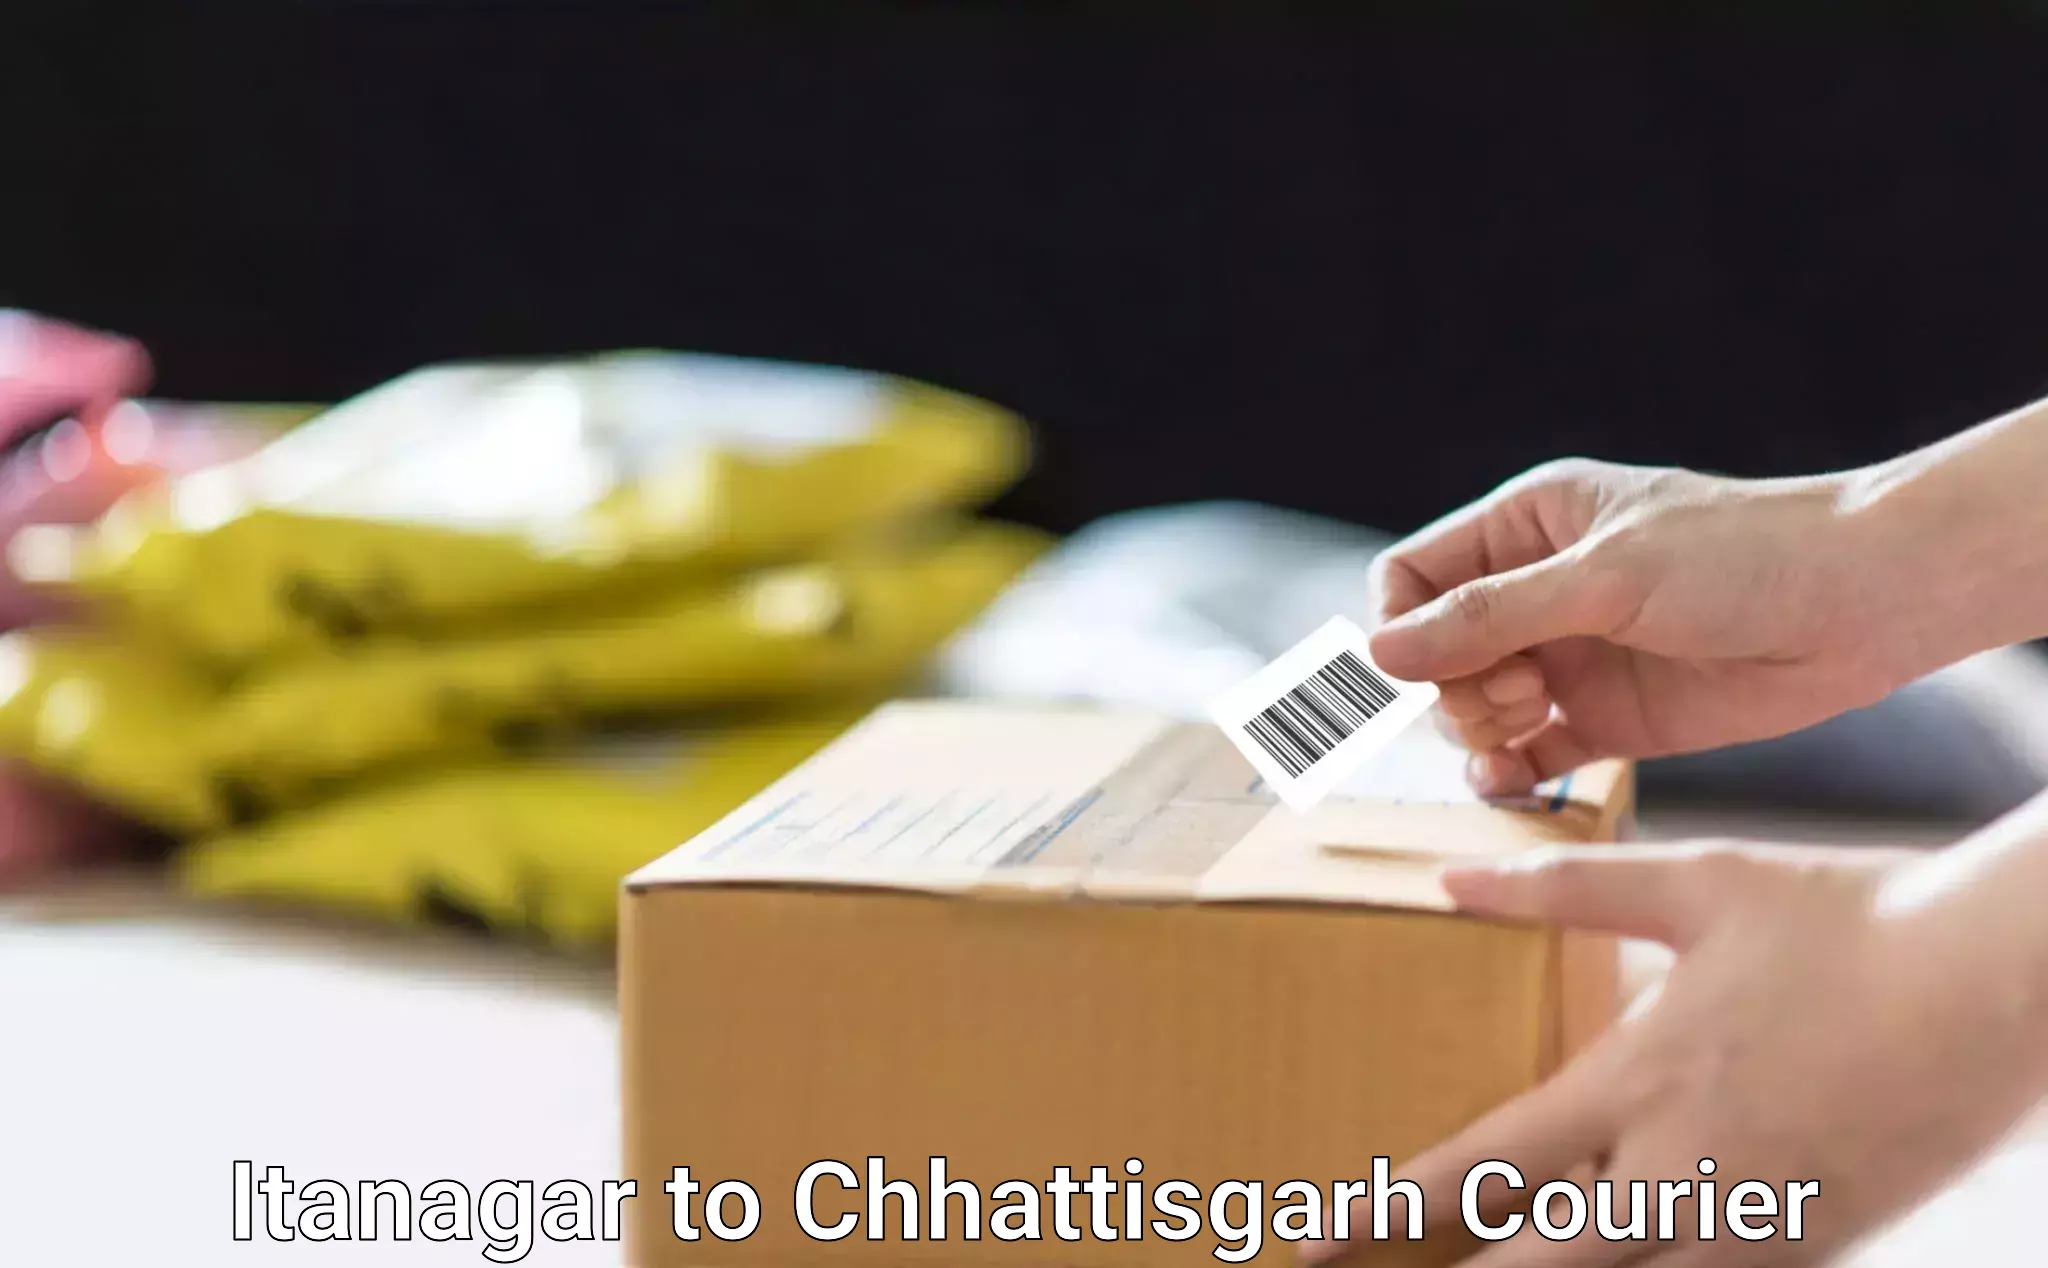 Fast delivery service Itanagar to Chhattisgarh